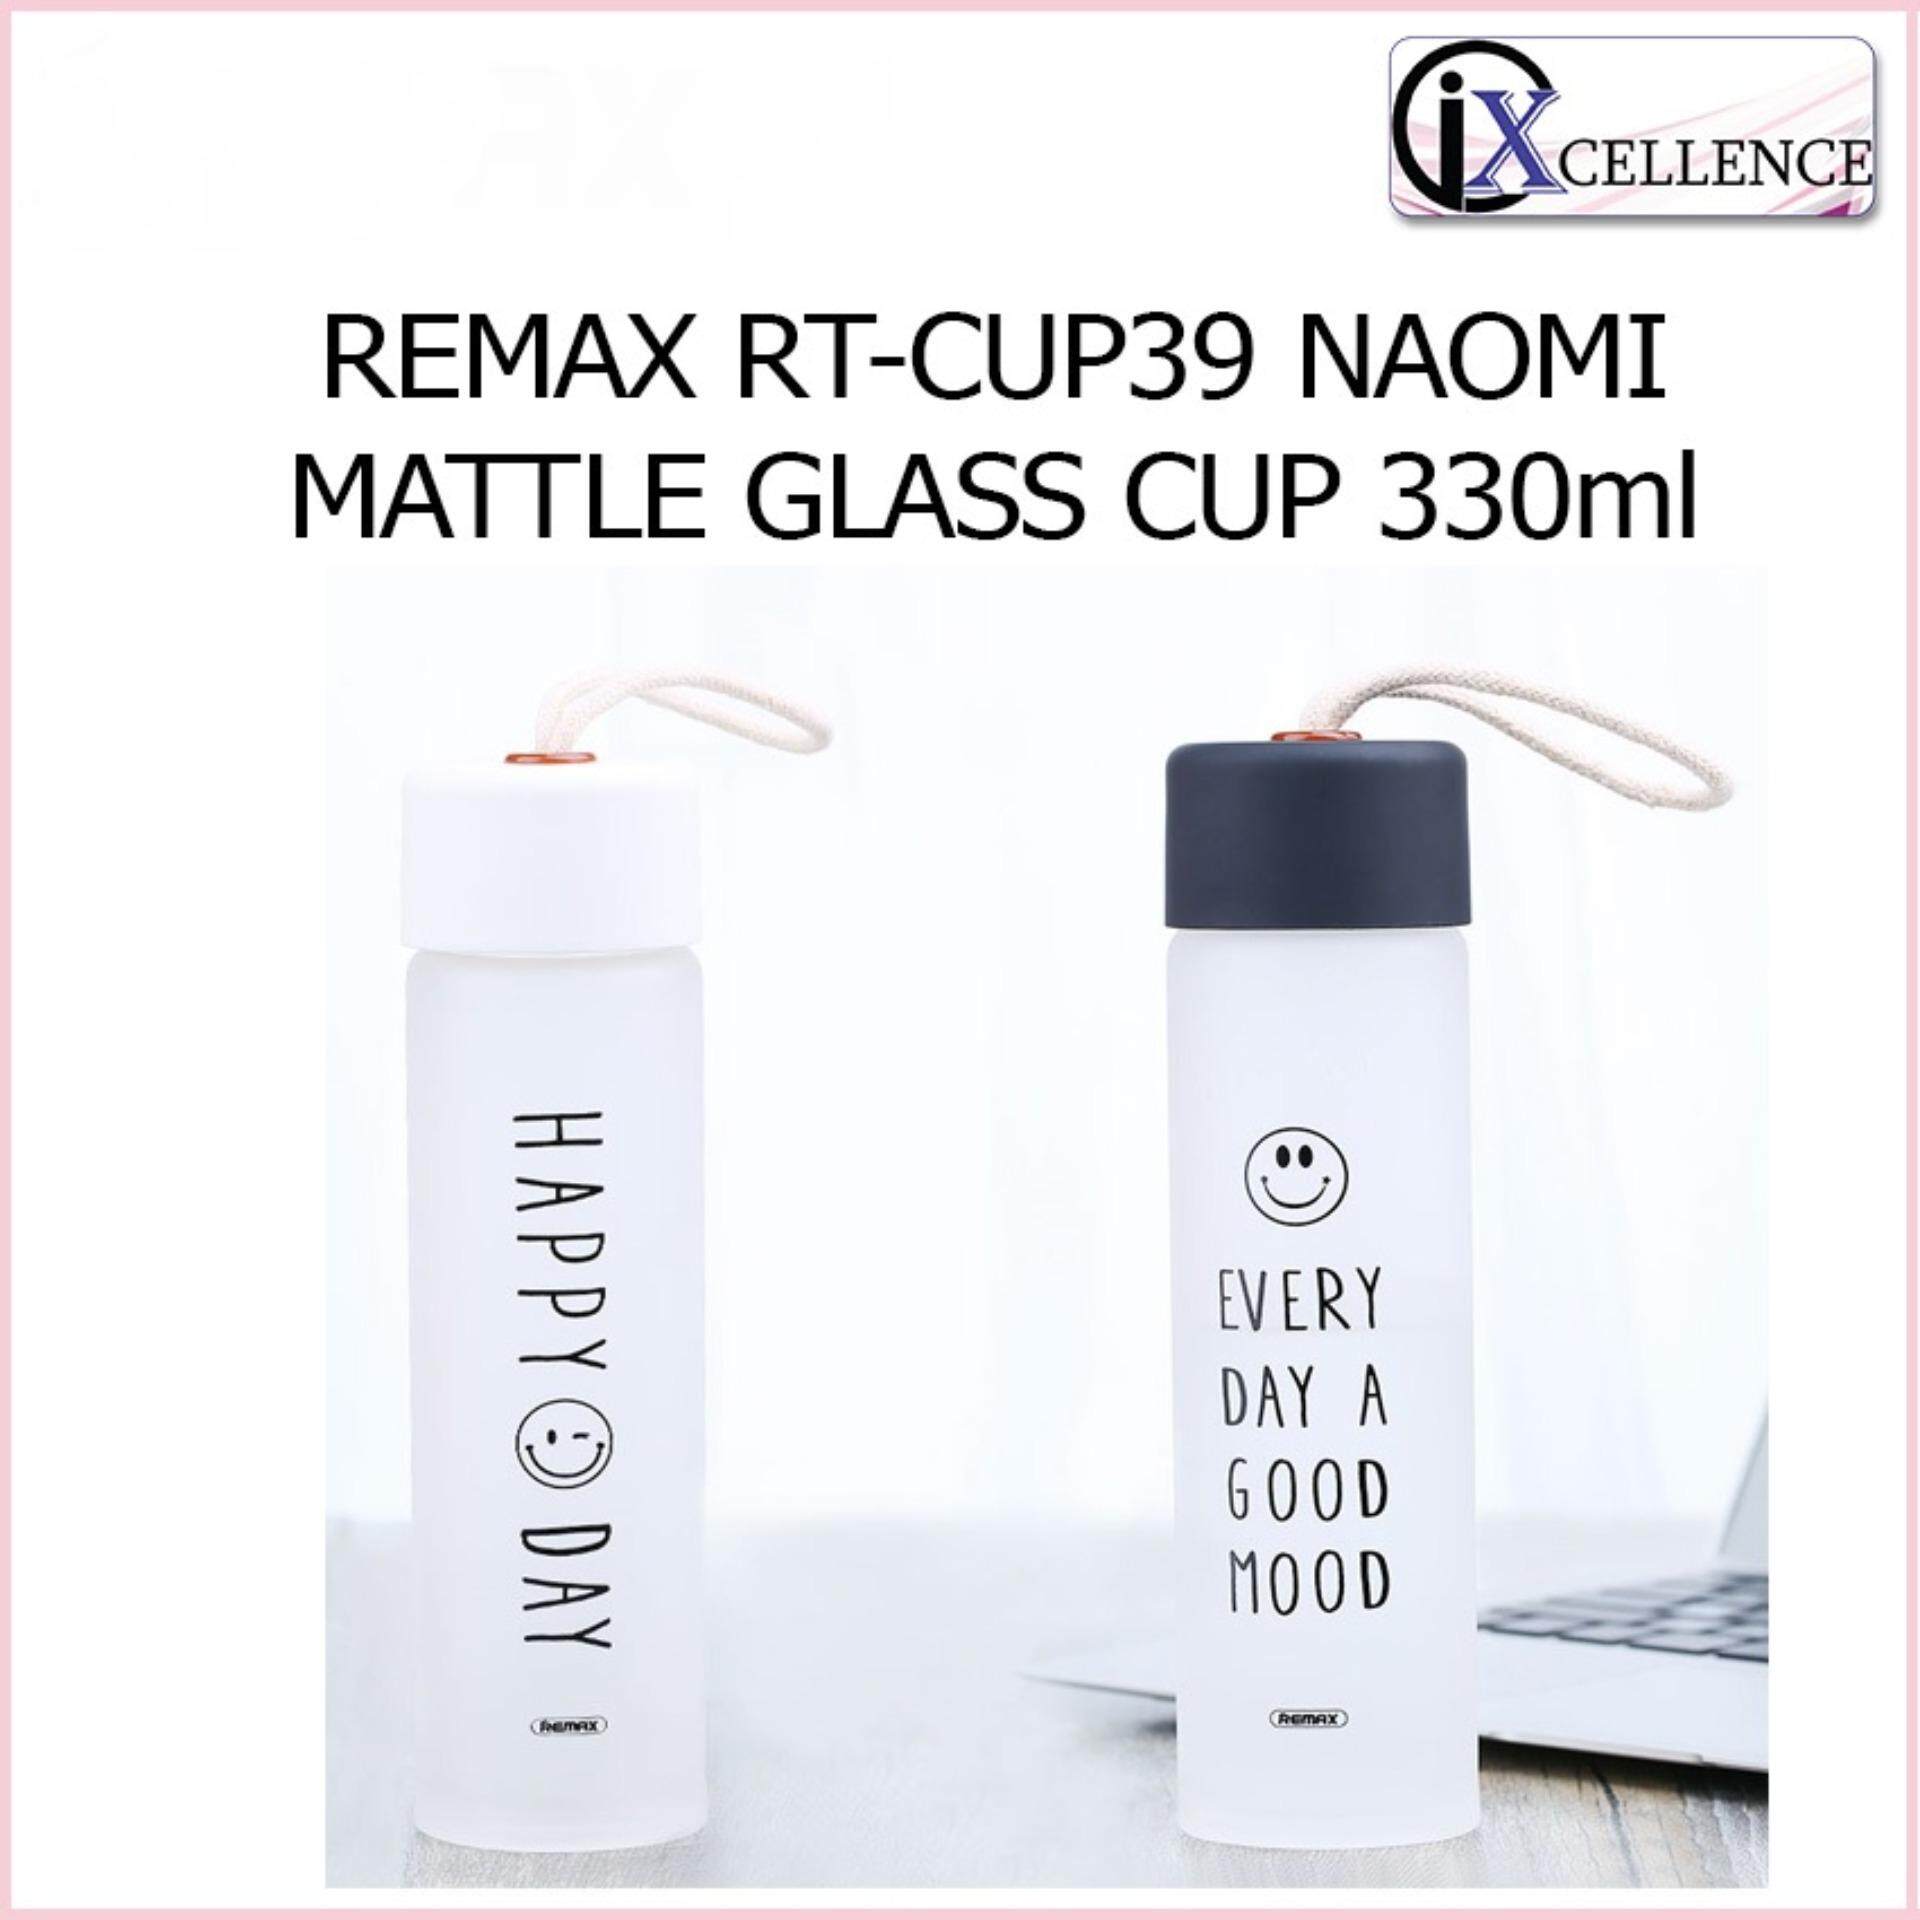 [IX] REMAX RT-CUP39 NAOMI MATTLE GLASS CUP